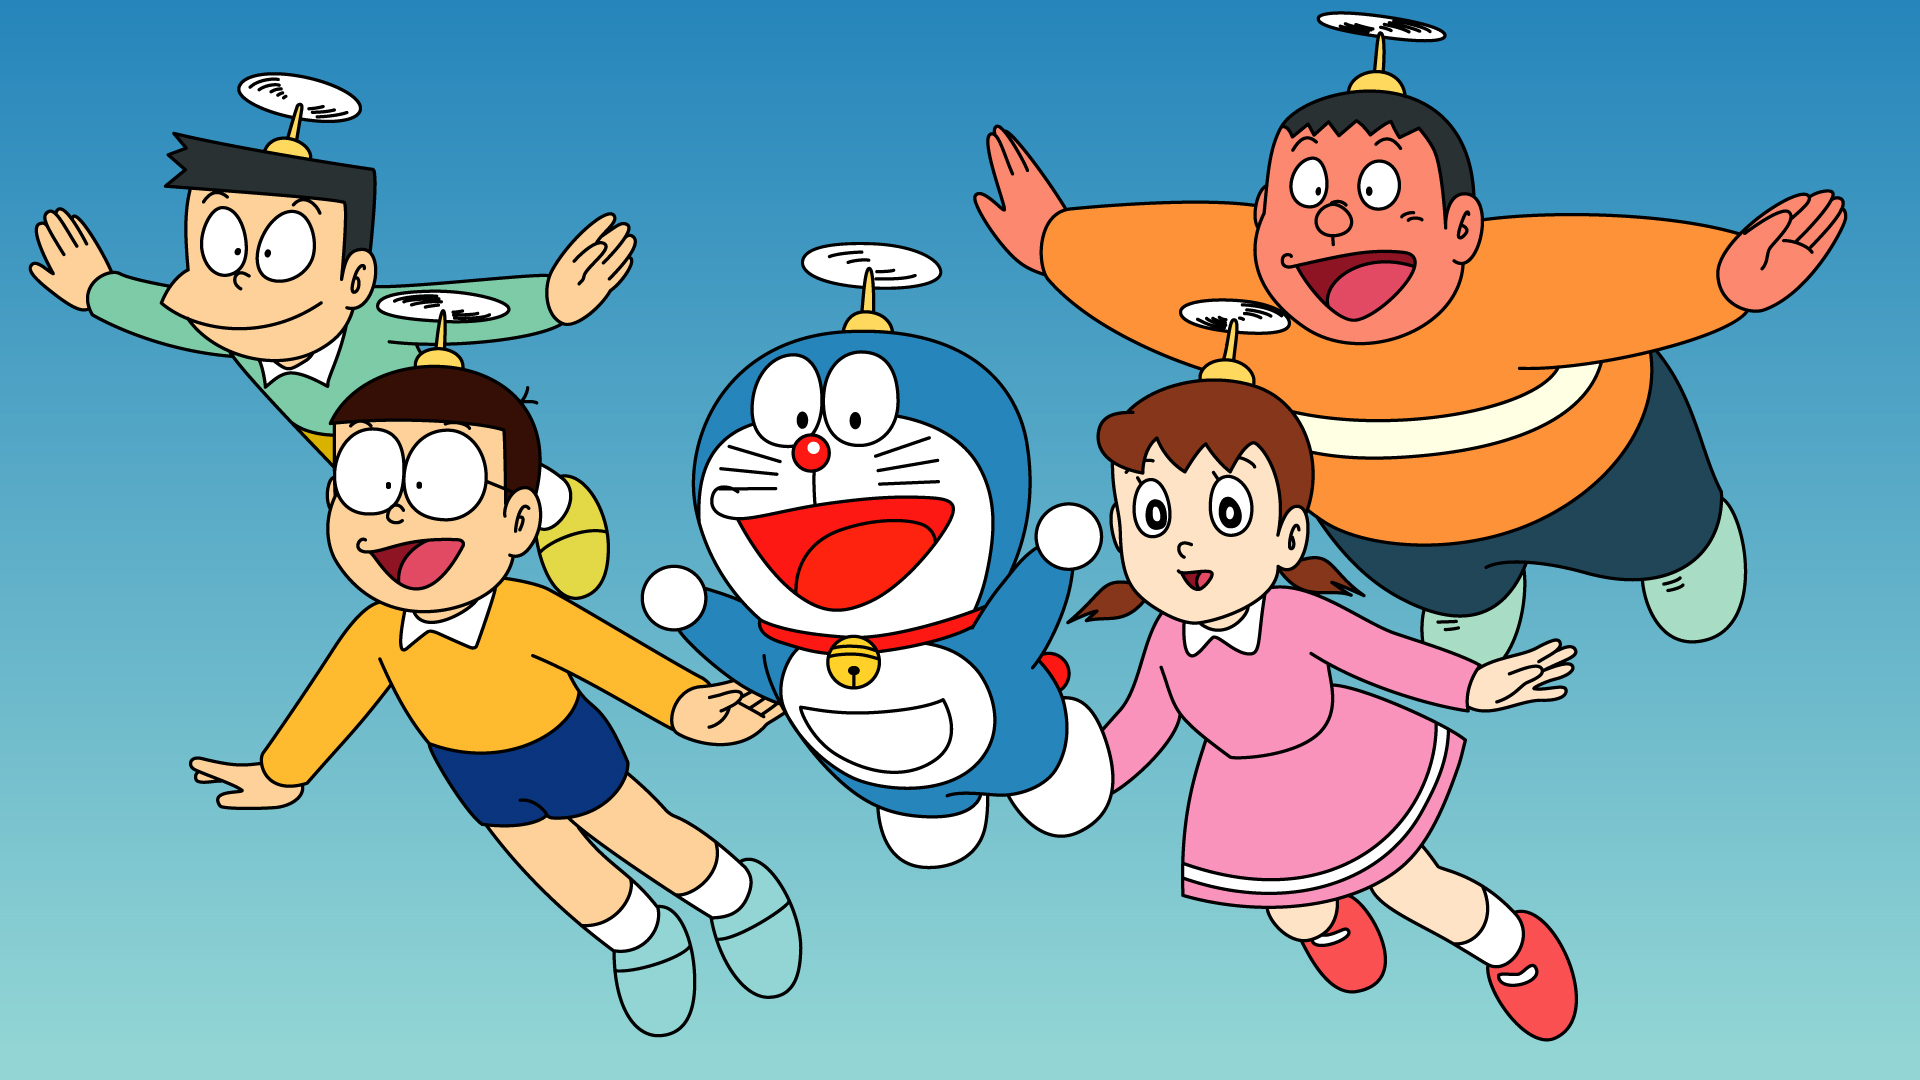 76+] Wallpapers Of Doraemon - WallpaperSafari